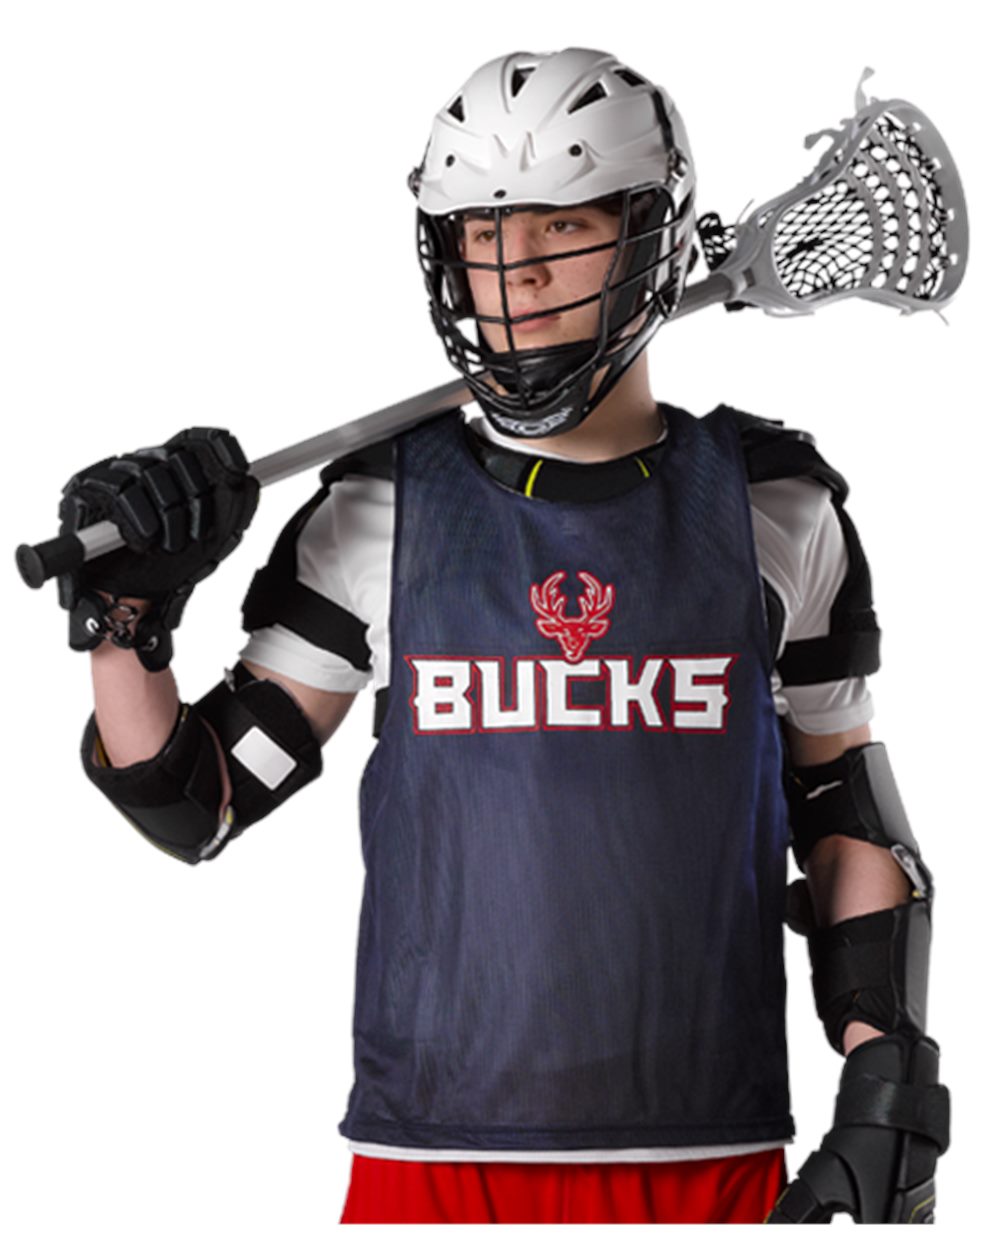 Full Dye Sub Sleeveless Lacrosse/Field Hockey Jersey - Reversible